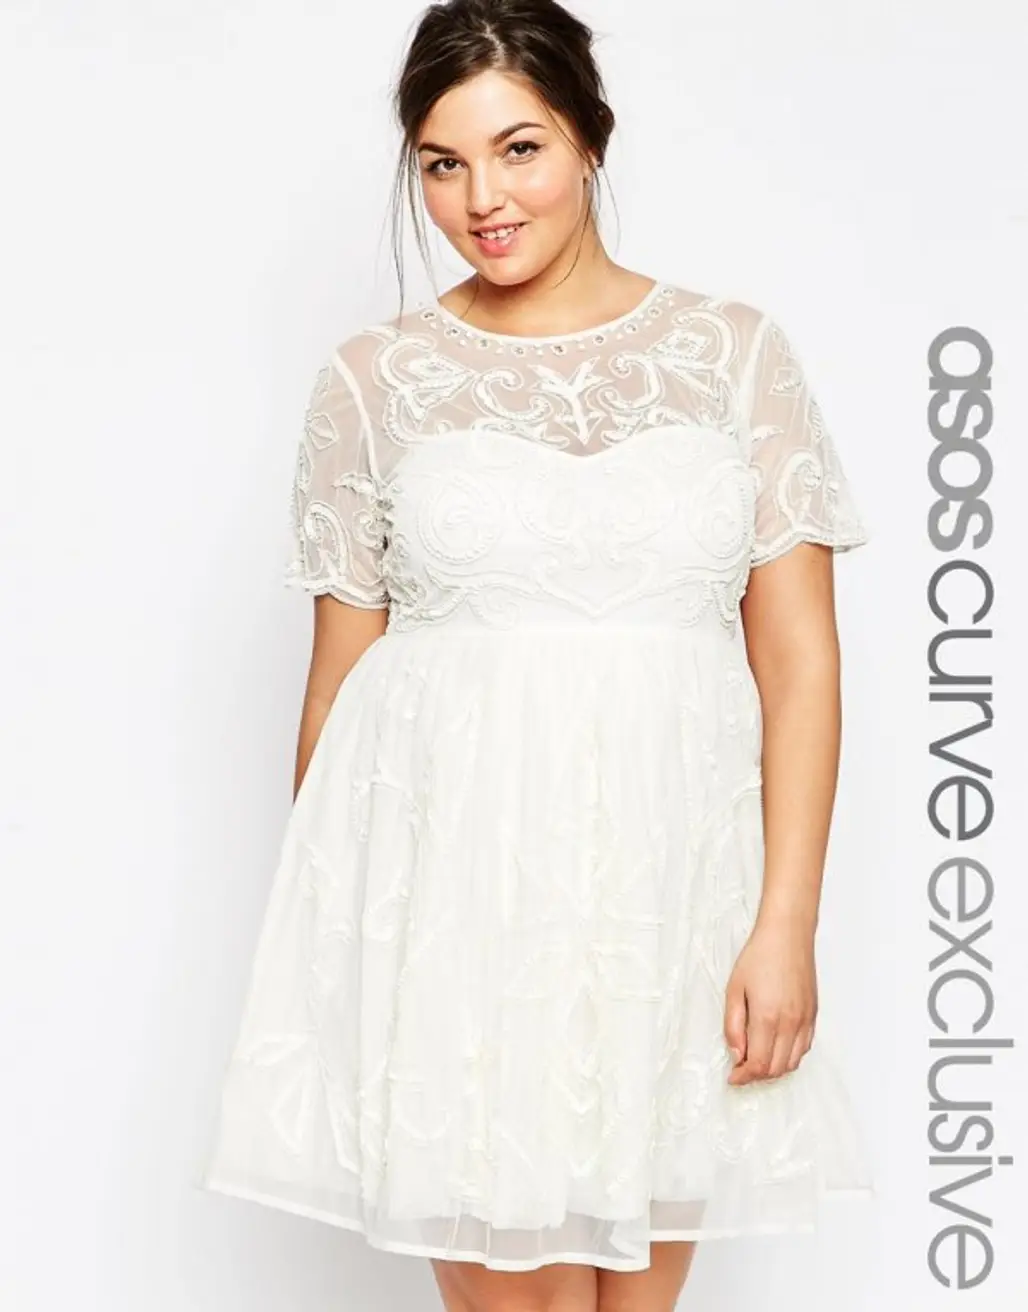 Embellished White Dress